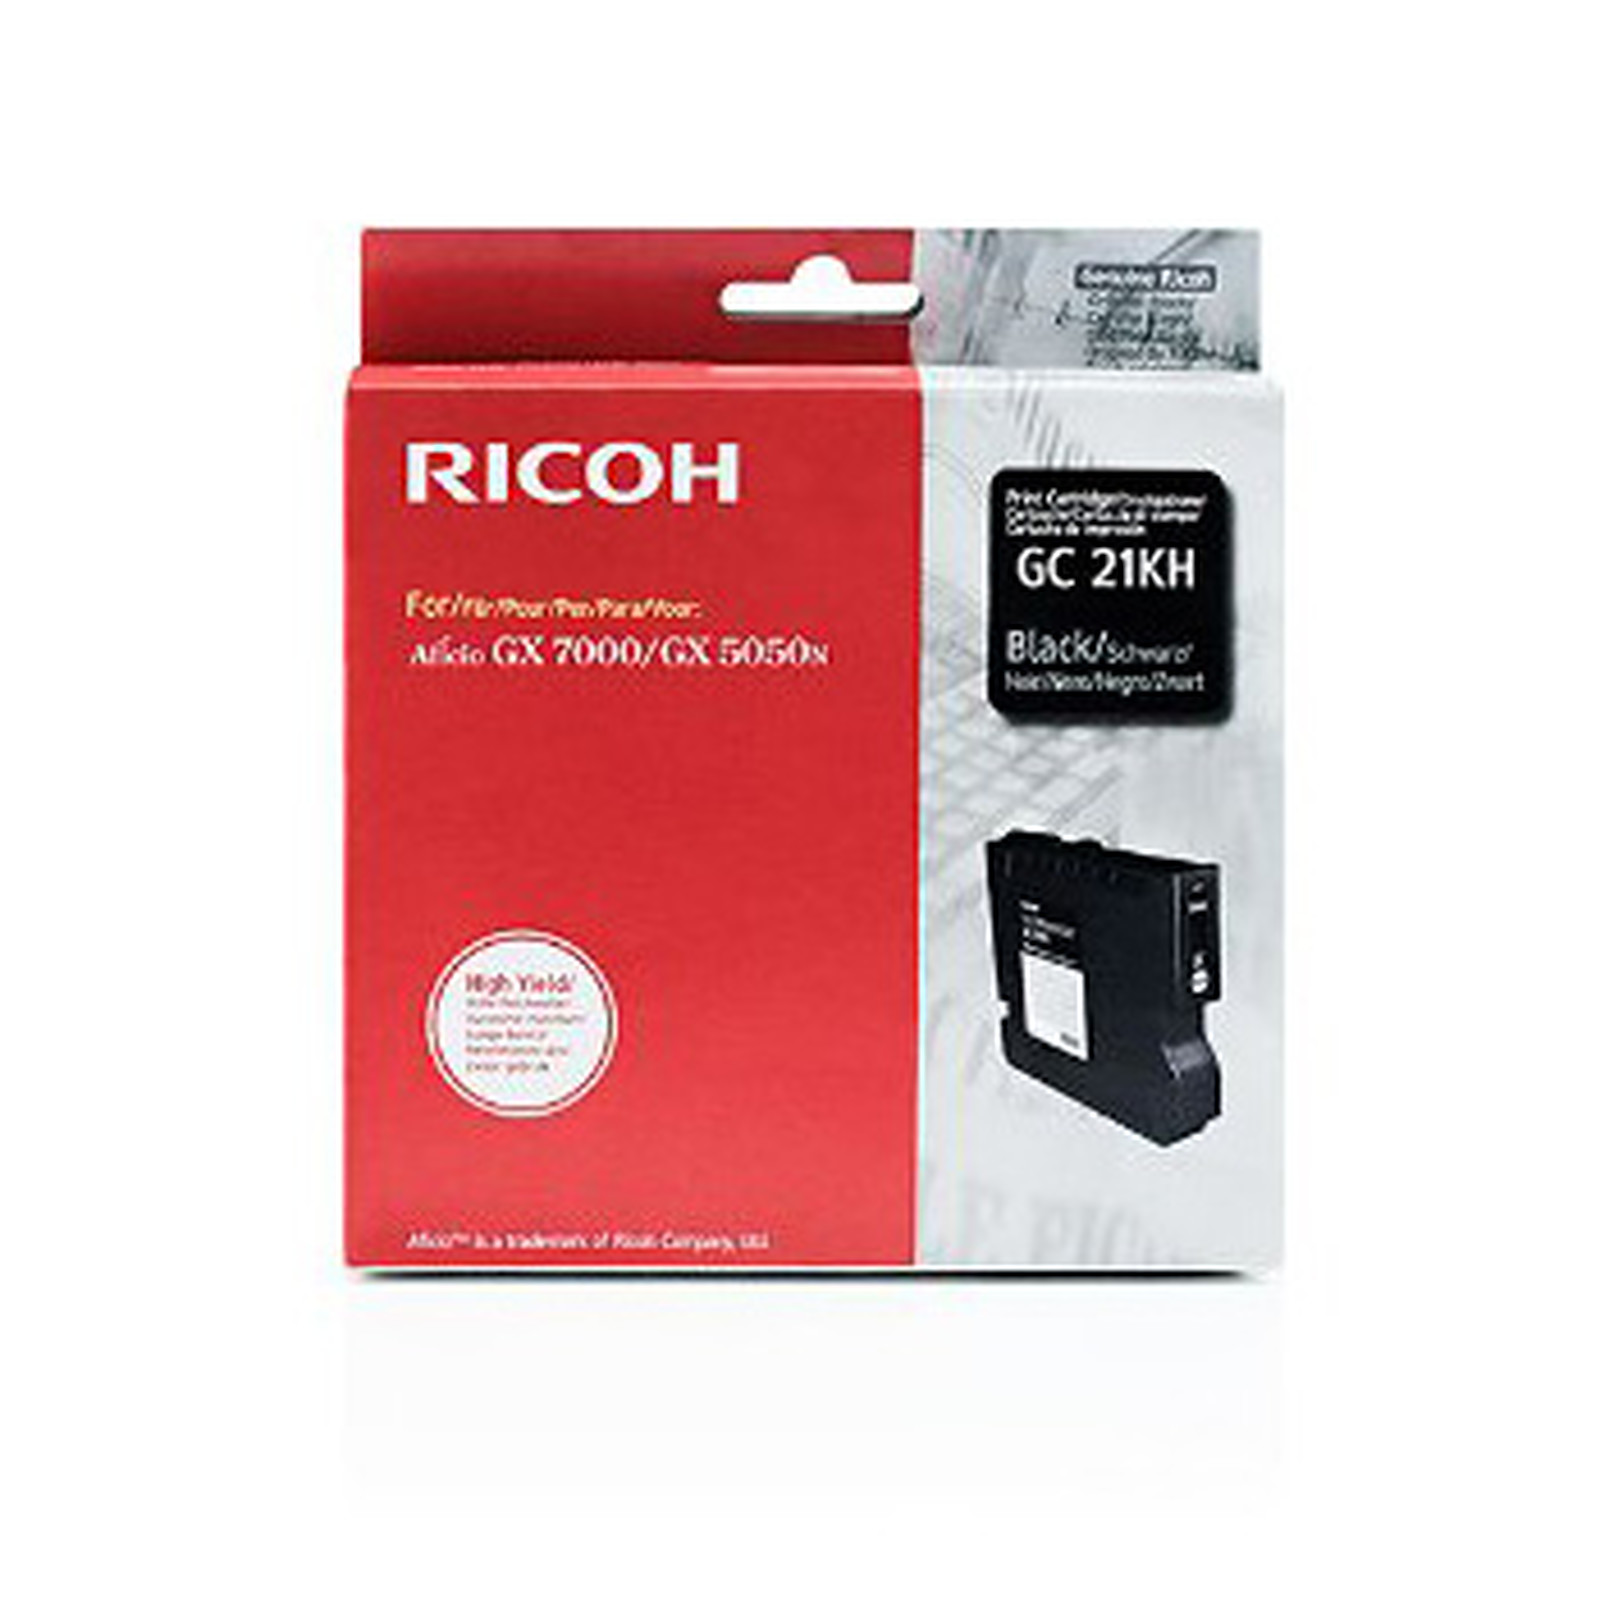 Ricoh GC21KH Noir - 405536 - Cartouche imprimante Ricoh